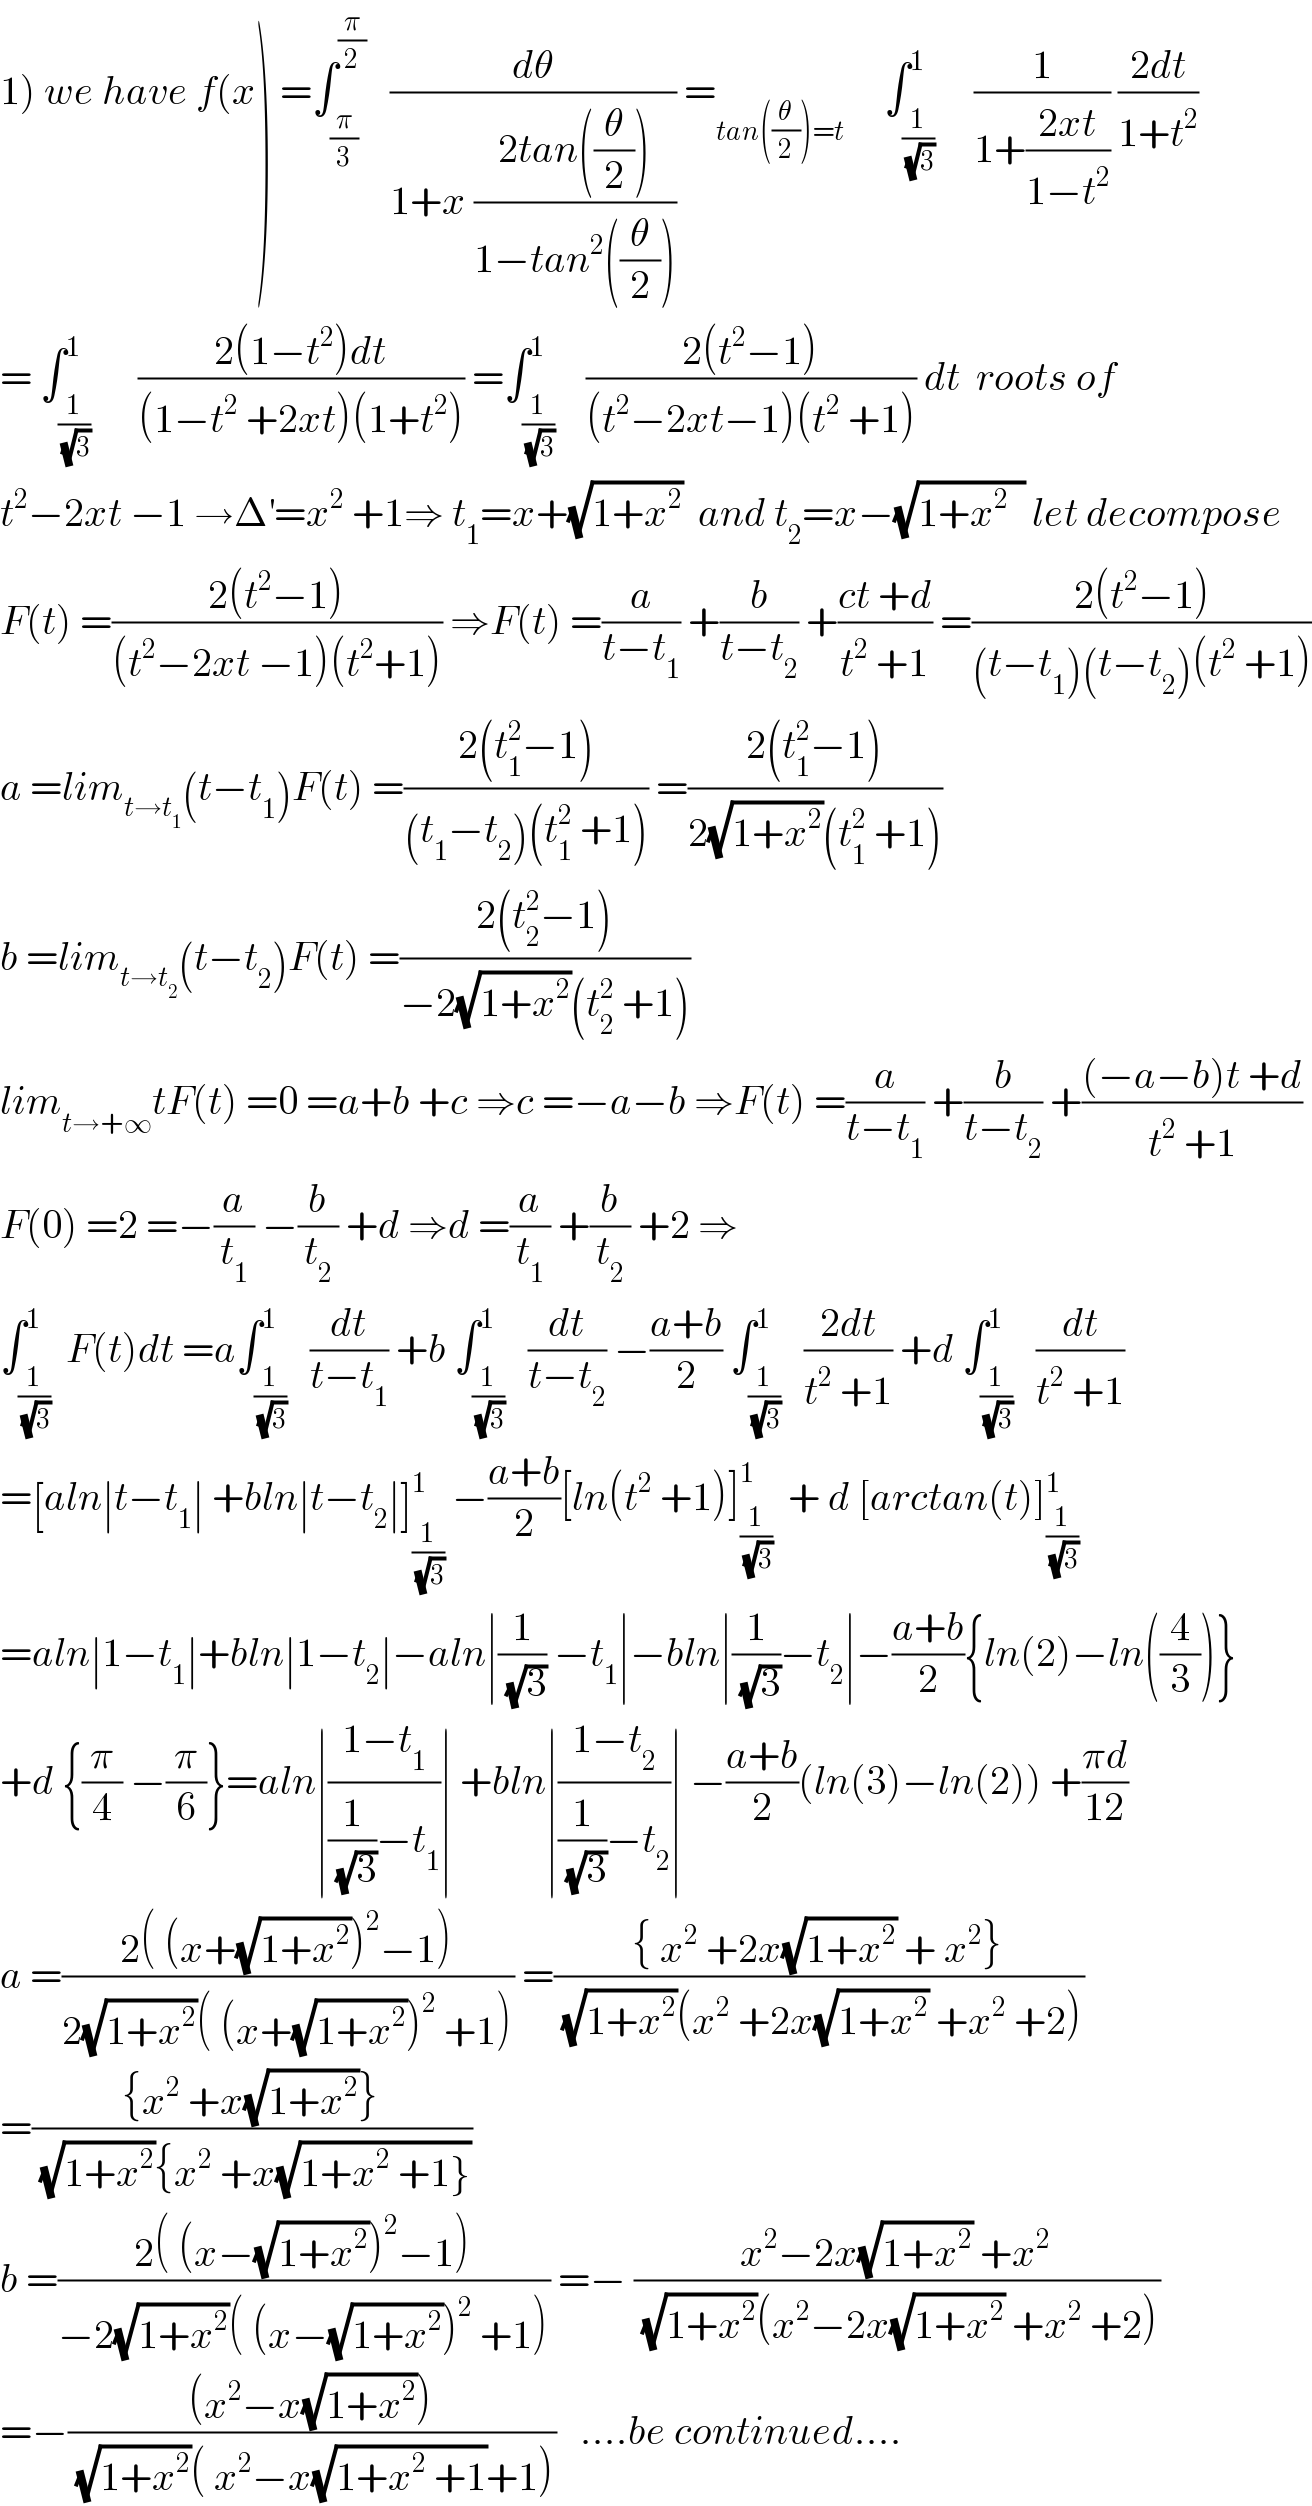 1) we have f(x) =∫_(π/3) ^(π/2)    (dθ/(1+x ((2tan((θ/2)))/(1−tan^2 ((θ/2)))))) =_(tan((θ/2))=t)      ∫_(1/(√3)) ^1     (1/(1+((2xt)/(1−t^2 )))) ((2dt)/(1+t^2 ))  = ∫_(1/(√3)) ^1      ((2(1−t^2 )dt)/((1−t^2  +2xt)(1+t^2 ))) =∫_(1/(√3)) ^1    ((2(t^2 −1))/((t^2 −2xt−1)(t^2  +1))) dt  roots of  t^2 −2xt −1 →Δ^′ =x^2  +1⇒ t_1 =x+(√(1+x^2 ))  and t_2 =x−(√(1+x^2   )) let decompose  F(t) =((2(t^2 −1))/((t^2 −2xt −1)(t^2 +1))) ⇒F(t) =(a/(t−t_1 )) +(b/(t−t_2 )) +((ct +d)/(t^2  +1)) =((2(t^2 −1))/((t−t_1 )(t−t_2 )(t^2  +1)))  a =lim_(t→t_1 ) (t−t_1 )F(t) =((2(t_1 ^2 −1))/((t_1 −t_2 )(t_1 ^2  +1))) =((2(t_1 ^2 −1))/(2(√(1+x^2 ))(t_1 ^2  +1)))  b =lim_(t→t_2 ) (t−t_2 )F(t) =((2(t_2 ^2 −1))/(−2(√(1+x^2 ))(t_2 ^2  +1)))  lim_(t→+∞) tF(t) =0 =a+b +c ⇒c =−a−b ⇒F(t) =(a/(t−t_1 )) +(b/(t−t_2 )) +(((−a−b)t +d)/(t^2  +1))  F(0) =2 =−(a/t_1 ) −(b/t_2 ) +d ⇒d =(a/t_1 ) +(b/t_2 ) +2 ⇒  ∫_(1/(√3)) ^1  F(t)dt =a∫_(1/(√3)) ^1   (dt/(t−t_1 )) +b ∫_(1/(√3)) ^1   (dt/(t−t_2 )) −((a+b)/2) ∫_(1/(√3)) ^1   ((2dt)/(t^2  +1)) +d ∫_(1/(√3)) ^1   (dt/(t^2  +1))  =[aln∣t−t_1 ∣ +bln∣t−t_2 ∣]_(1/(√3)) ^1  −((a+b)/2)[ln(t^2  +1)]_(1/(√3)) ^1   + d [arctan(t)]_(1/(√3)) ^1   =aln∣1−t_1 ∣+bln∣1−t_2 ∣−aln∣(1/(√3)) −t_1 ∣−bln∣(1/(√3))−t_2 ∣−((a+b)/2){ln(2)−ln((4/3))}  +d {(π/4) −(π/6)}=aln∣((1−t_1 )/((1/(√3))−t_1 ))∣ +bln∣((1−t_2 )/((1/(√3))−t_2 ))∣ −((a+b)/2)(ln(3)−ln(2)) +((πd)/(12))  a =((2( (x+(√(1+x^2 )))^2 −1))/(2(√(1+x^2 ))( (x+(√(1+x^2 )))^2  +1))) =(({ x^2  +2x(√(1+x^2 )) + x^2 })/((√(1+x^2 ))(x^2  +2x(√(1+x^2 )) +x^2  +2)))  =(({x^2  +x(√(1+x^2 ))})/((√(1+x^2 )){x^2  +x(√(1+x^2  +1}))))  b =((2( (x−(√(1+x^2 )))^2 −1))/(−2(√(1+x^2 ))( (x−(√(1+x^2 )))^2  +1))) =− ((x^2 −2x(√(1+x^2 )) +x^2 )/((√(1+x^2 ))(x^2 −2x(√(1+x^2 )) +x^2  +2)))  =−(((x^2 −x(√(1+x^2 ))))/((√(1+x^2 ))( x^2 −x(√(1+x^2  +1))+1)))   ....be continued....  